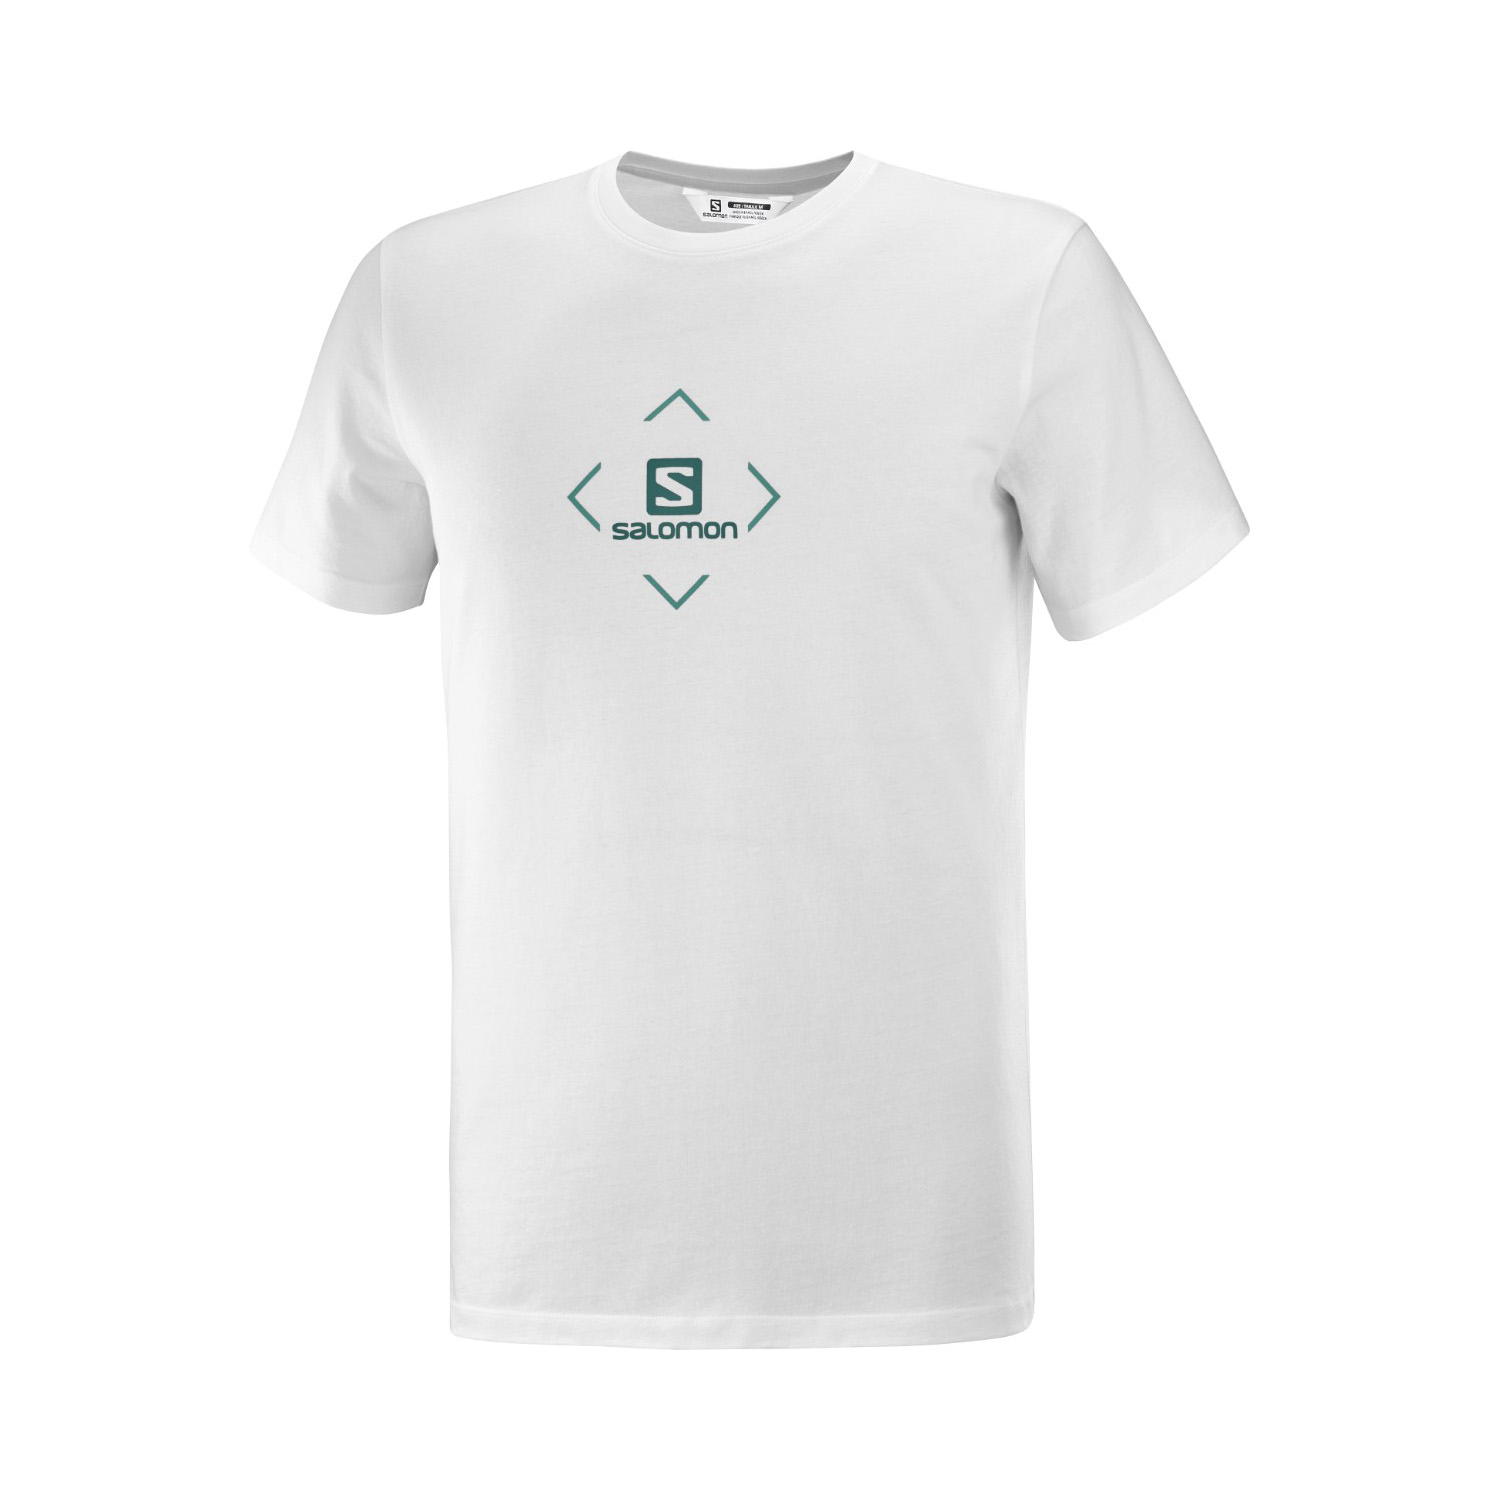 Salomon Cotton Erkek T-shirt - BEYAZ - 1